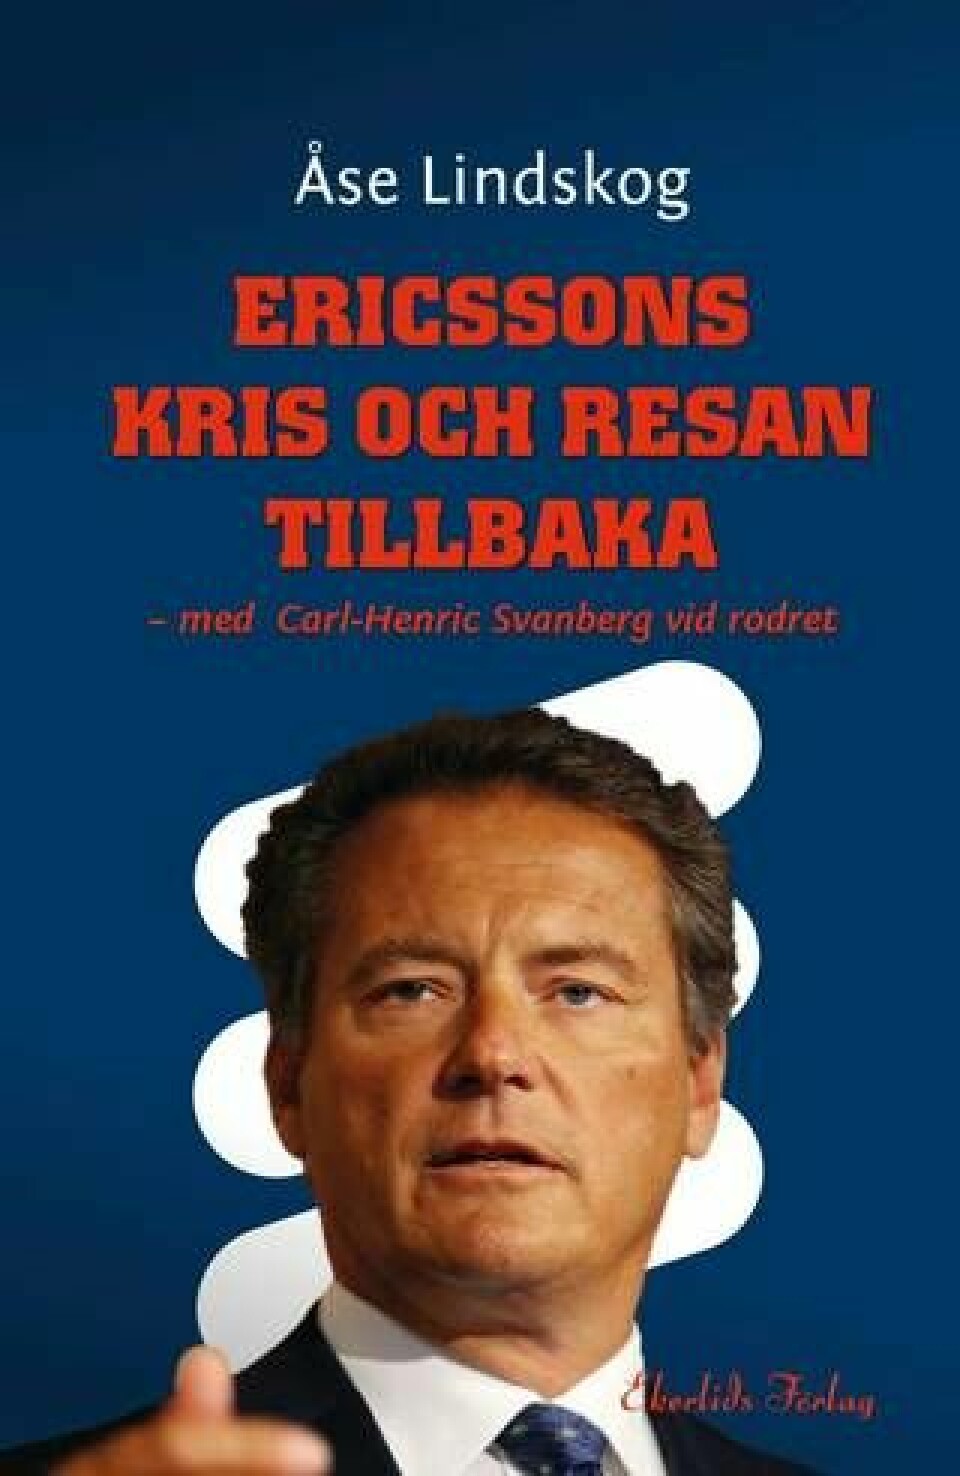 ”Erikssons kris och resan tillbaka”, Ekerlids förlag. Foto: Ekerlids förlag